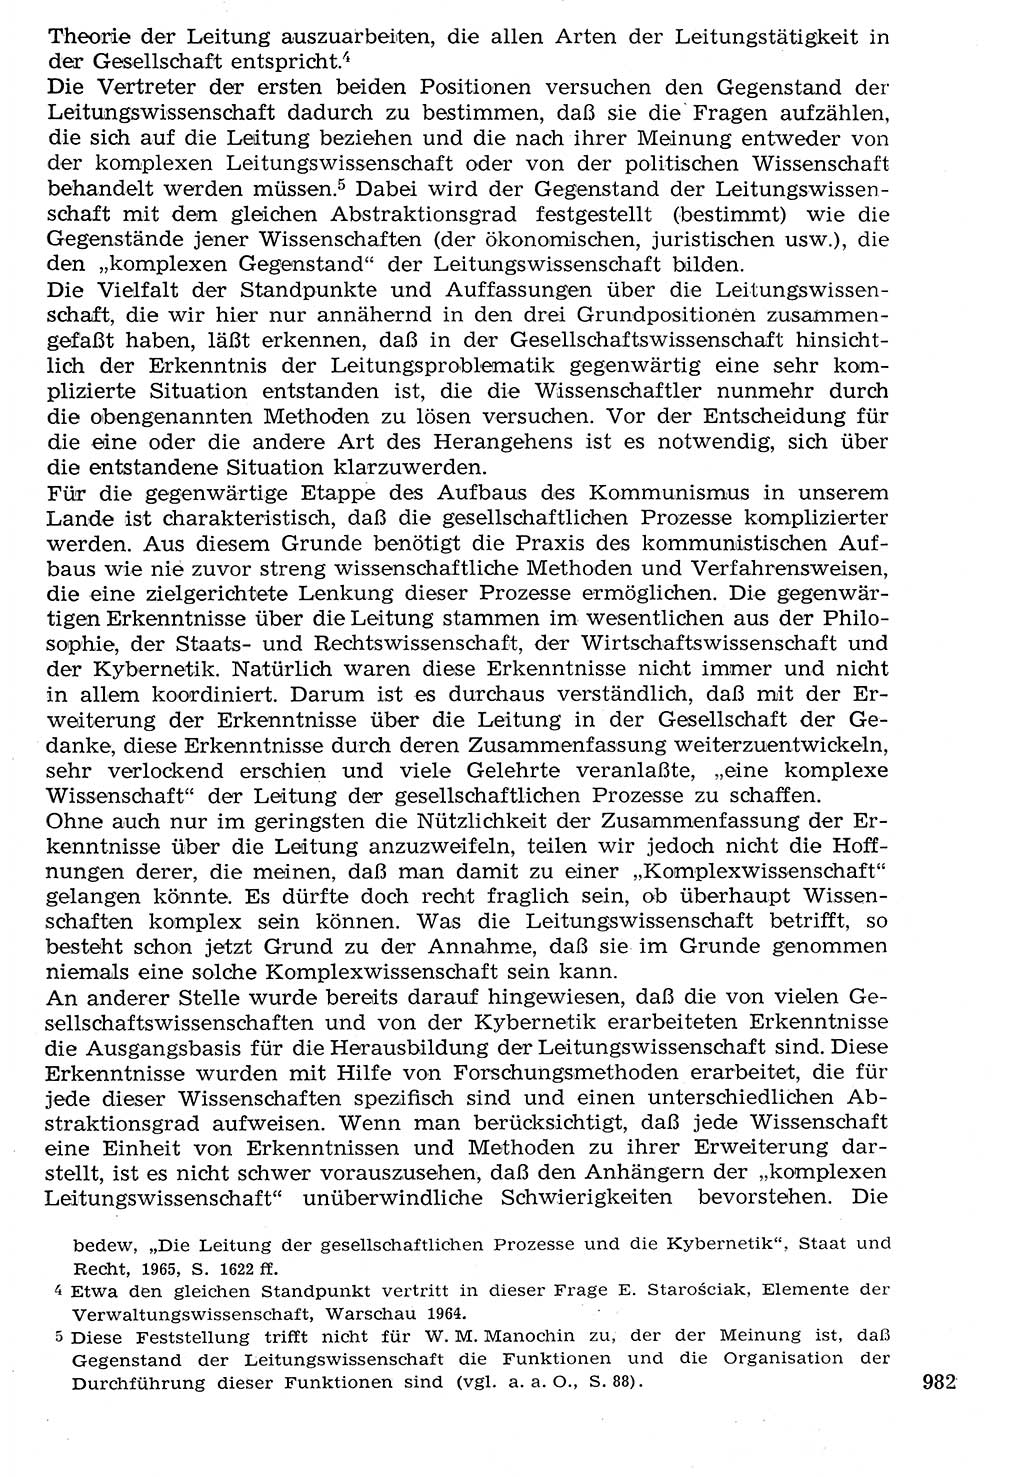 Staat und Recht (StuR), 17. Jahrgang [Deutsche Demokratische Republik (DDR)] 1968, Seite 982 (StuR DDR 1968, S. 982)